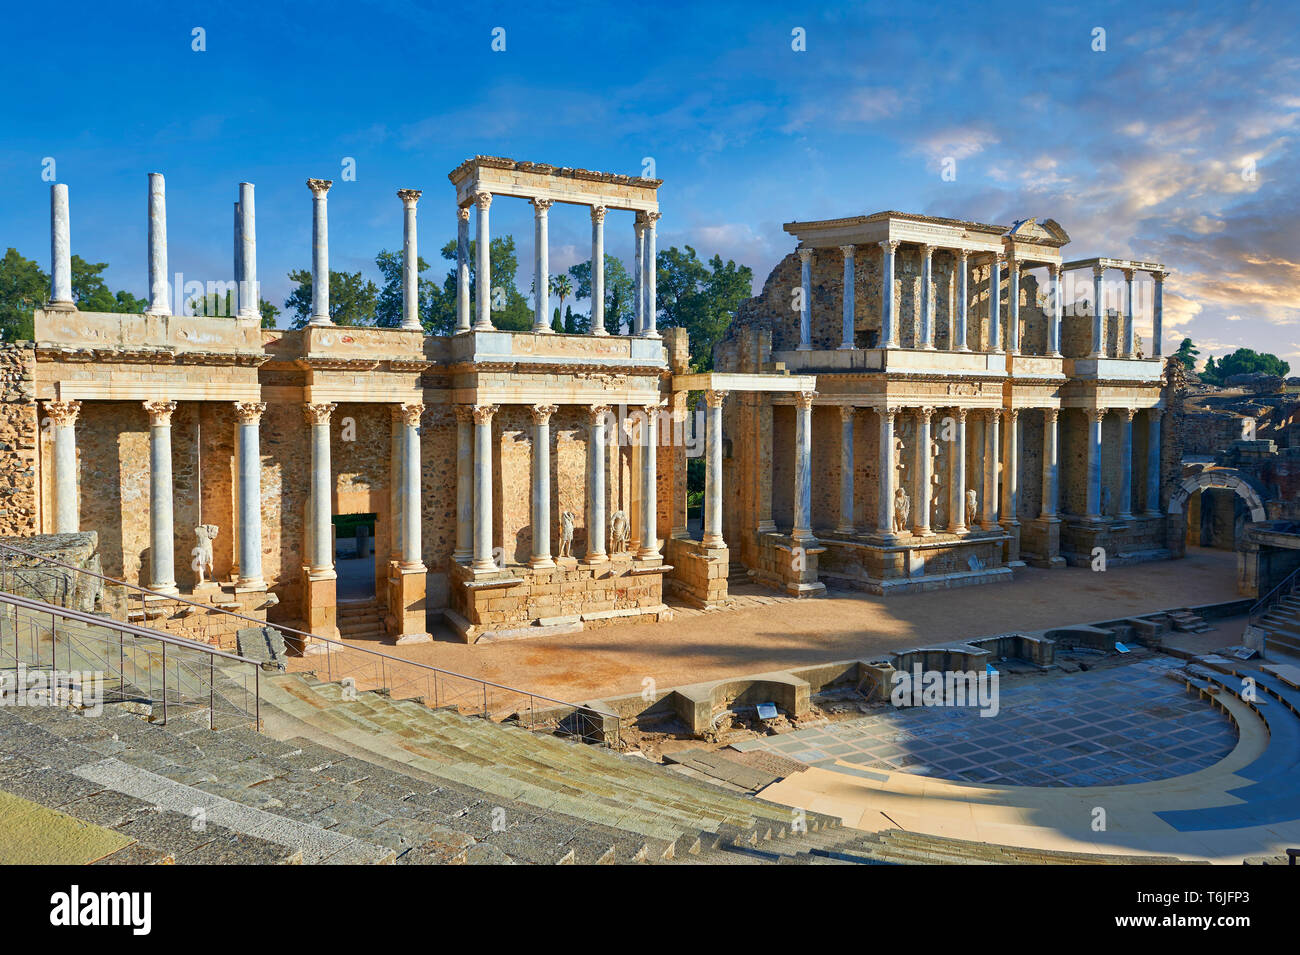 Théâtre romain de la colonie romaine d'Emerita Augusta (Mérida) consacré par le consul Marcus Vipsanius Agrippa et construit en 15BC, Merida Espagne Banque D'Images